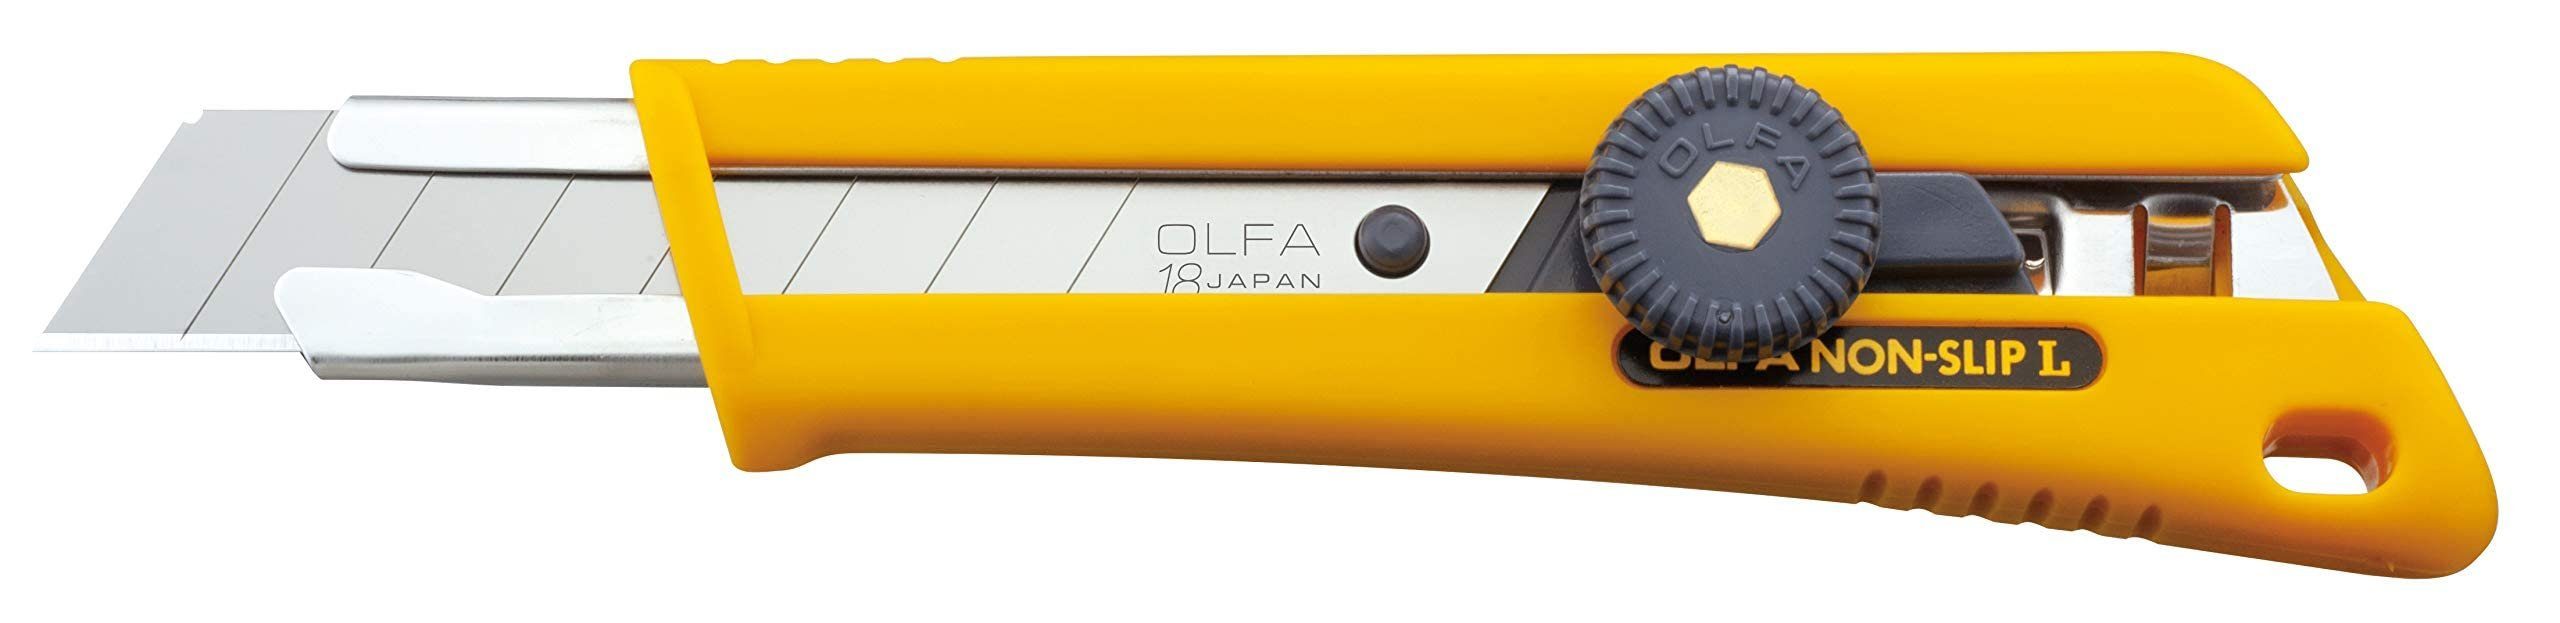 Cutter rutschfestes NOL-1 18mm Olfa Cuttermesser OLFA